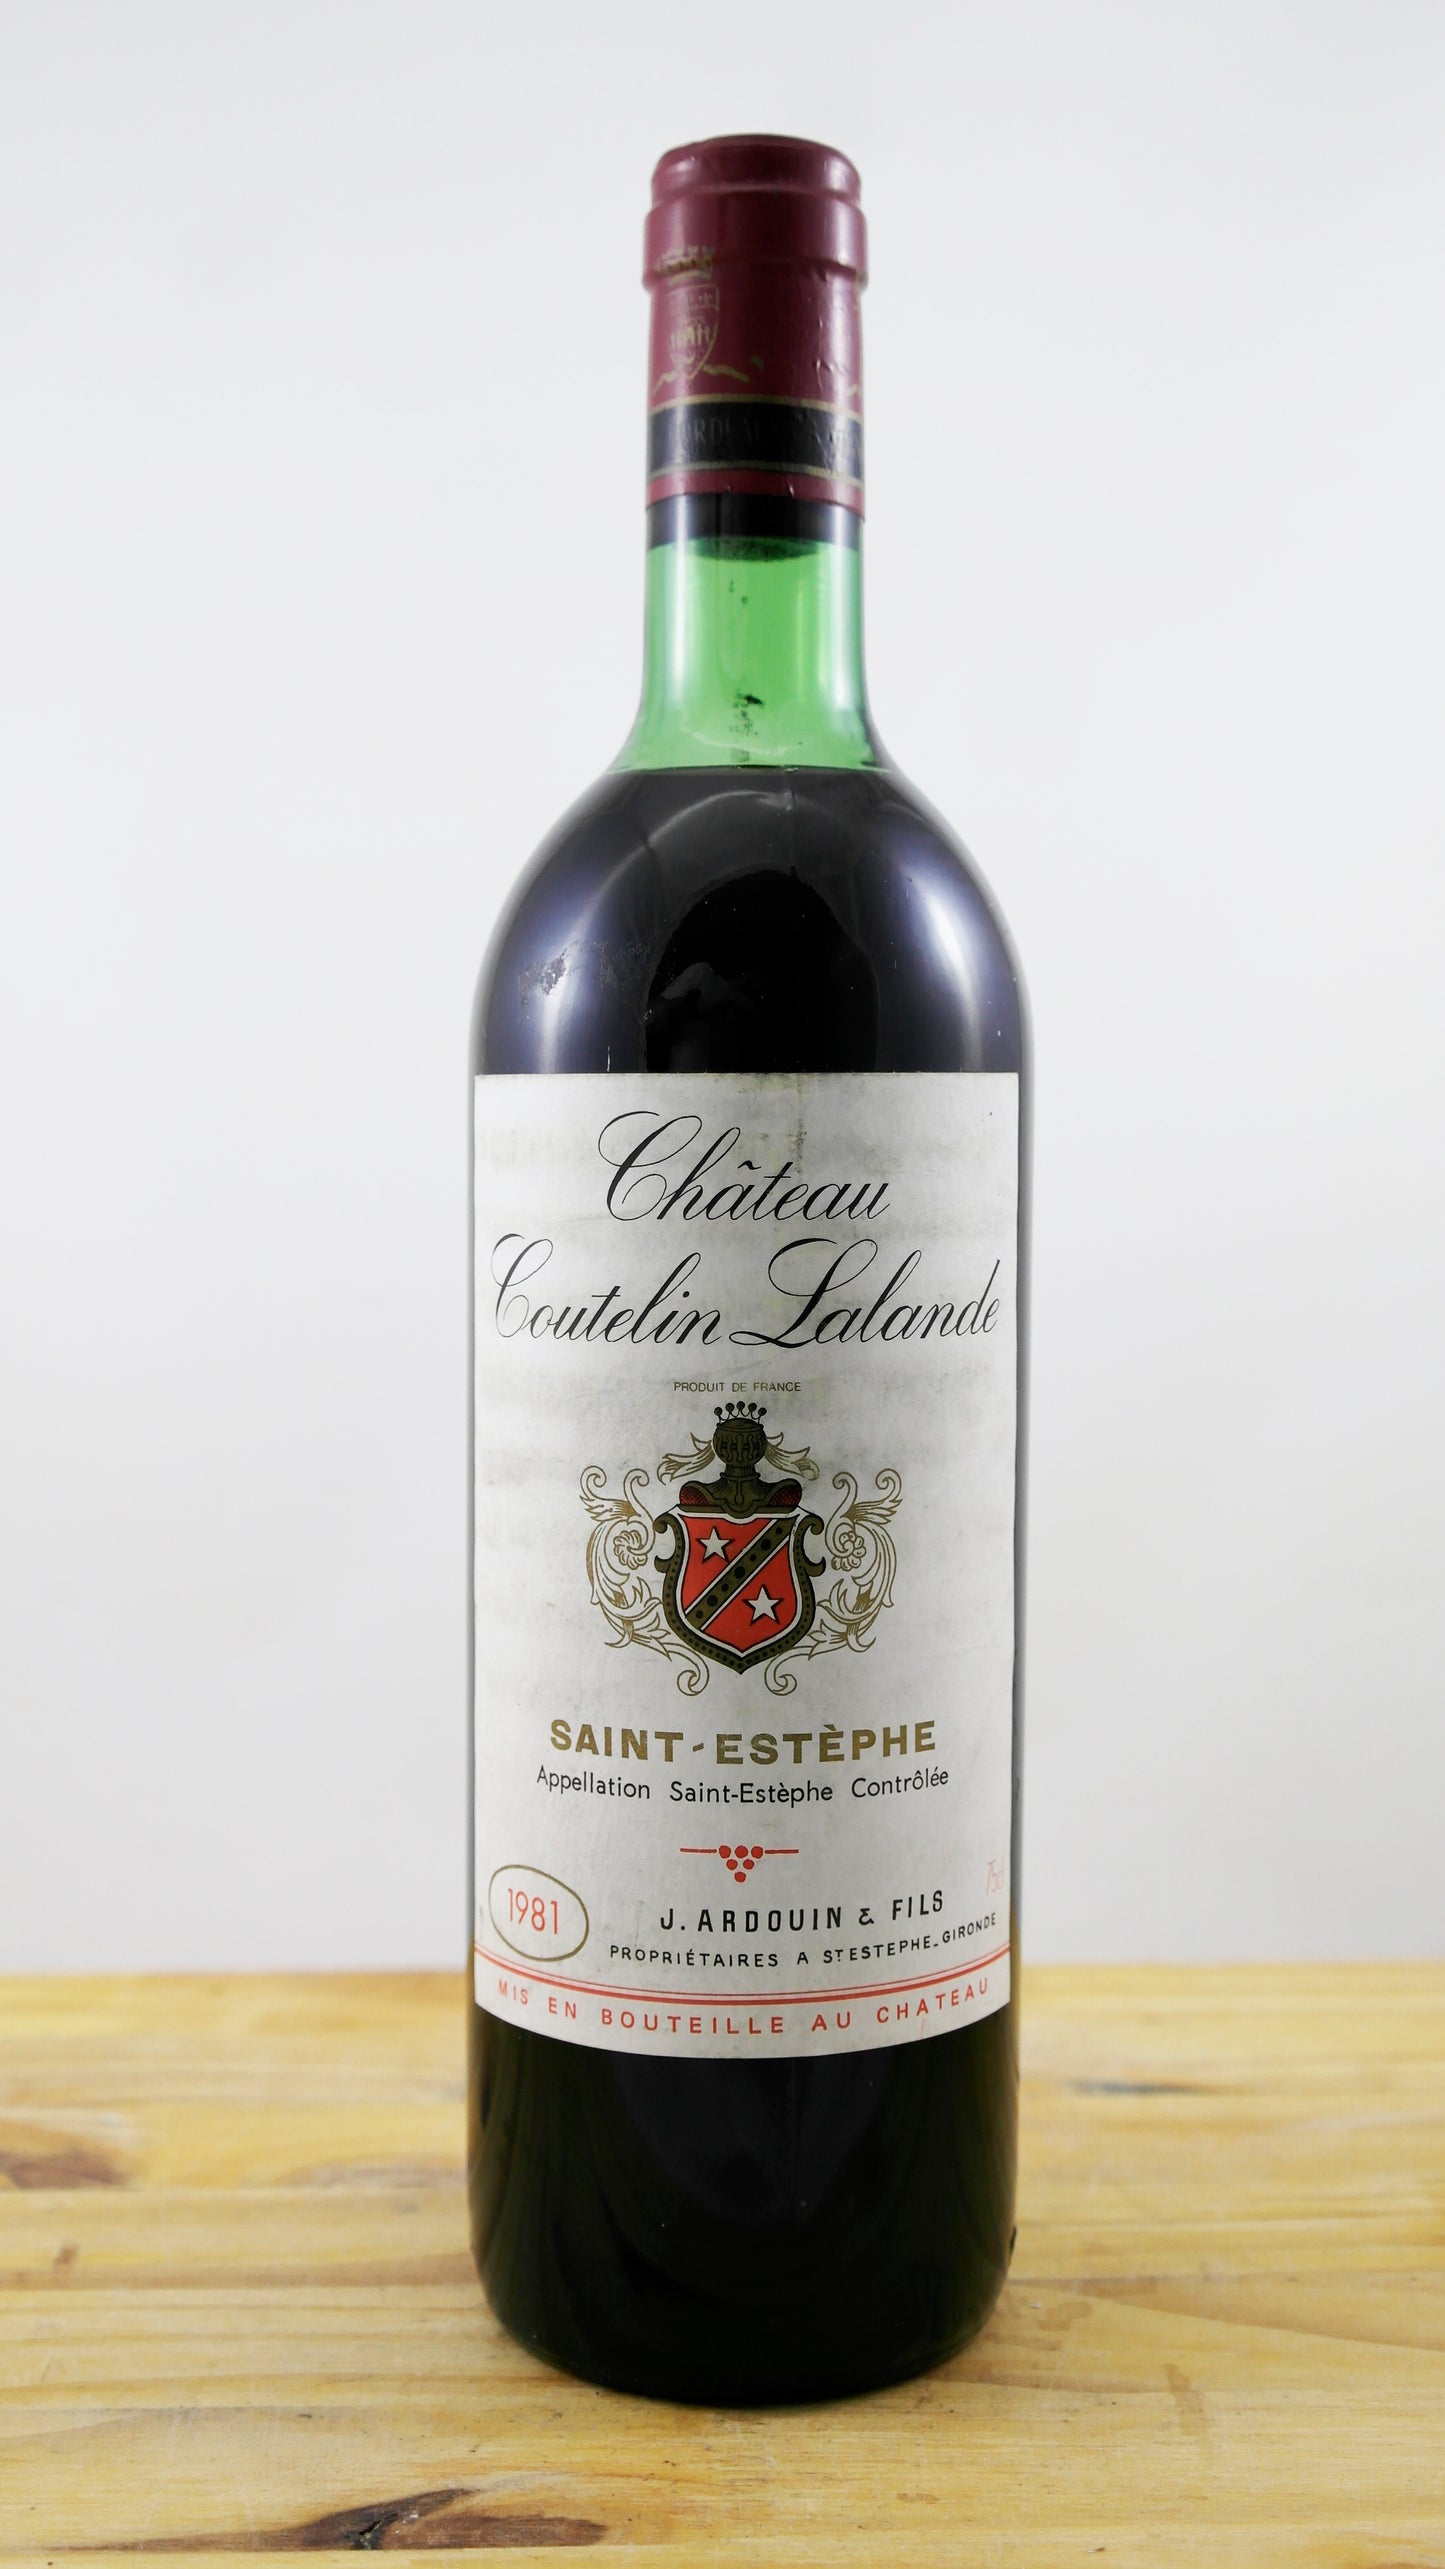 Château Coutelin Lalande Vin 1981